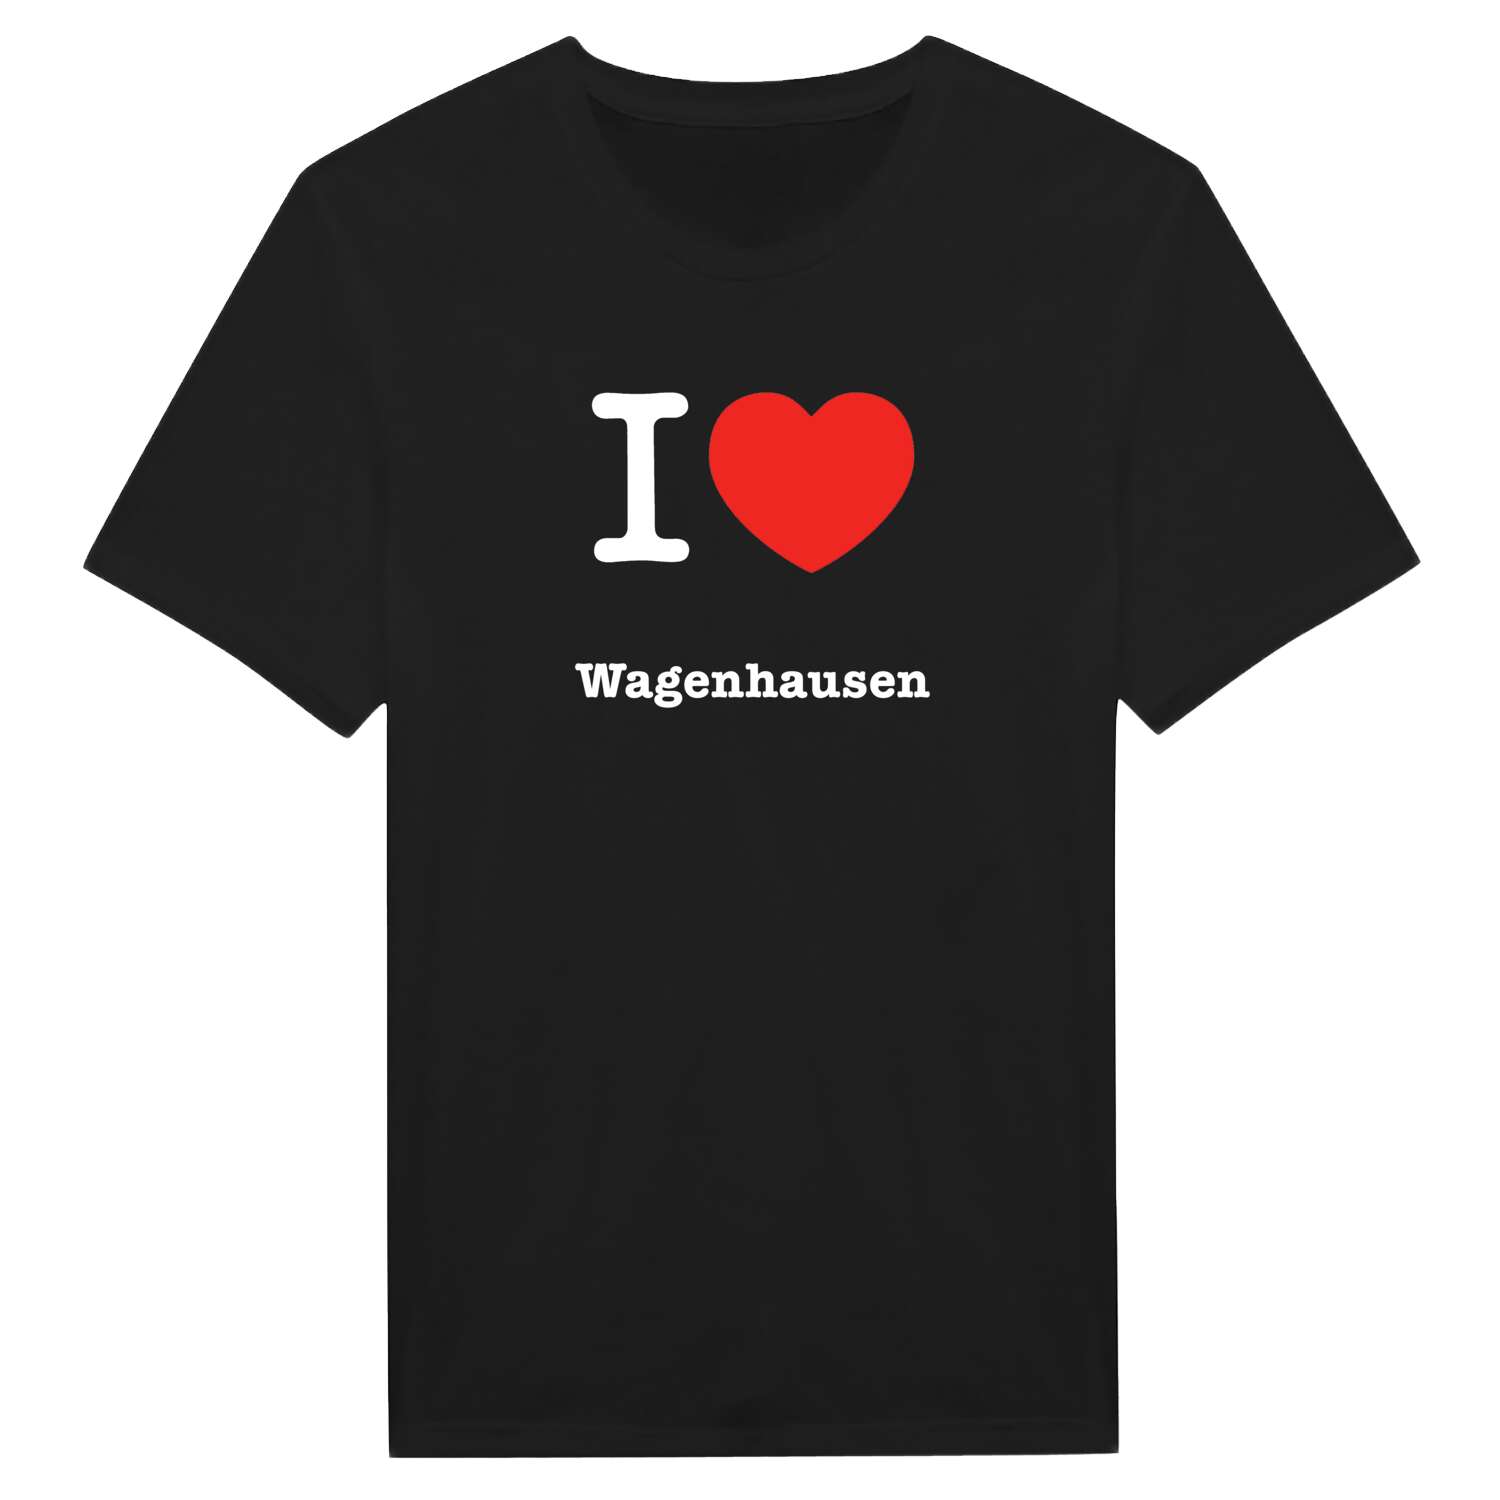 Wagenhausen T-Shirt »I love«